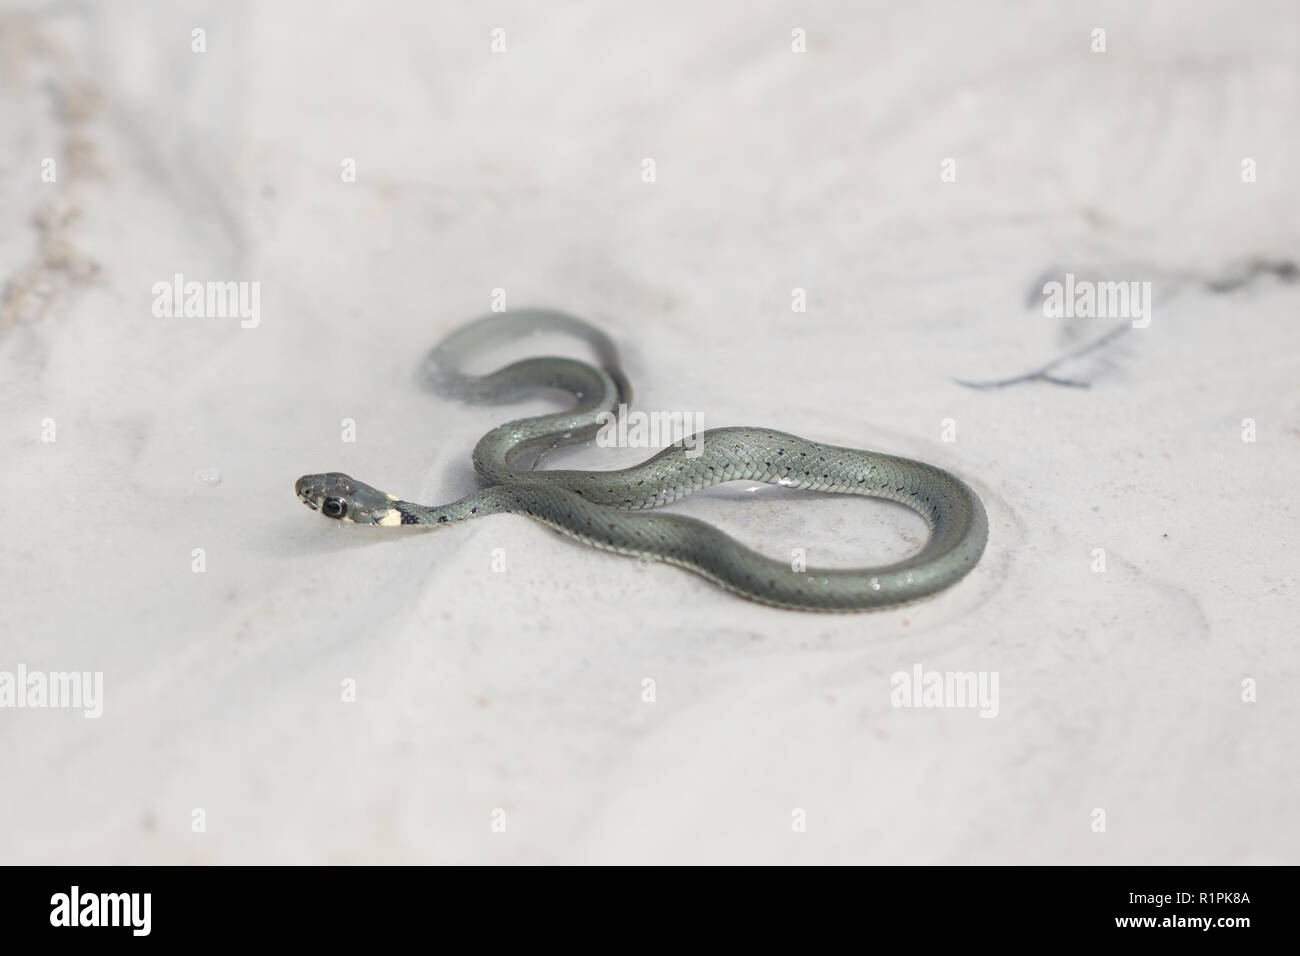 Culebra común - una serpiente olorosas. Un individuo joven en agua limpia fluyendo con la corriente del río. Una joven culebra en un entorno natural. Foto de stock